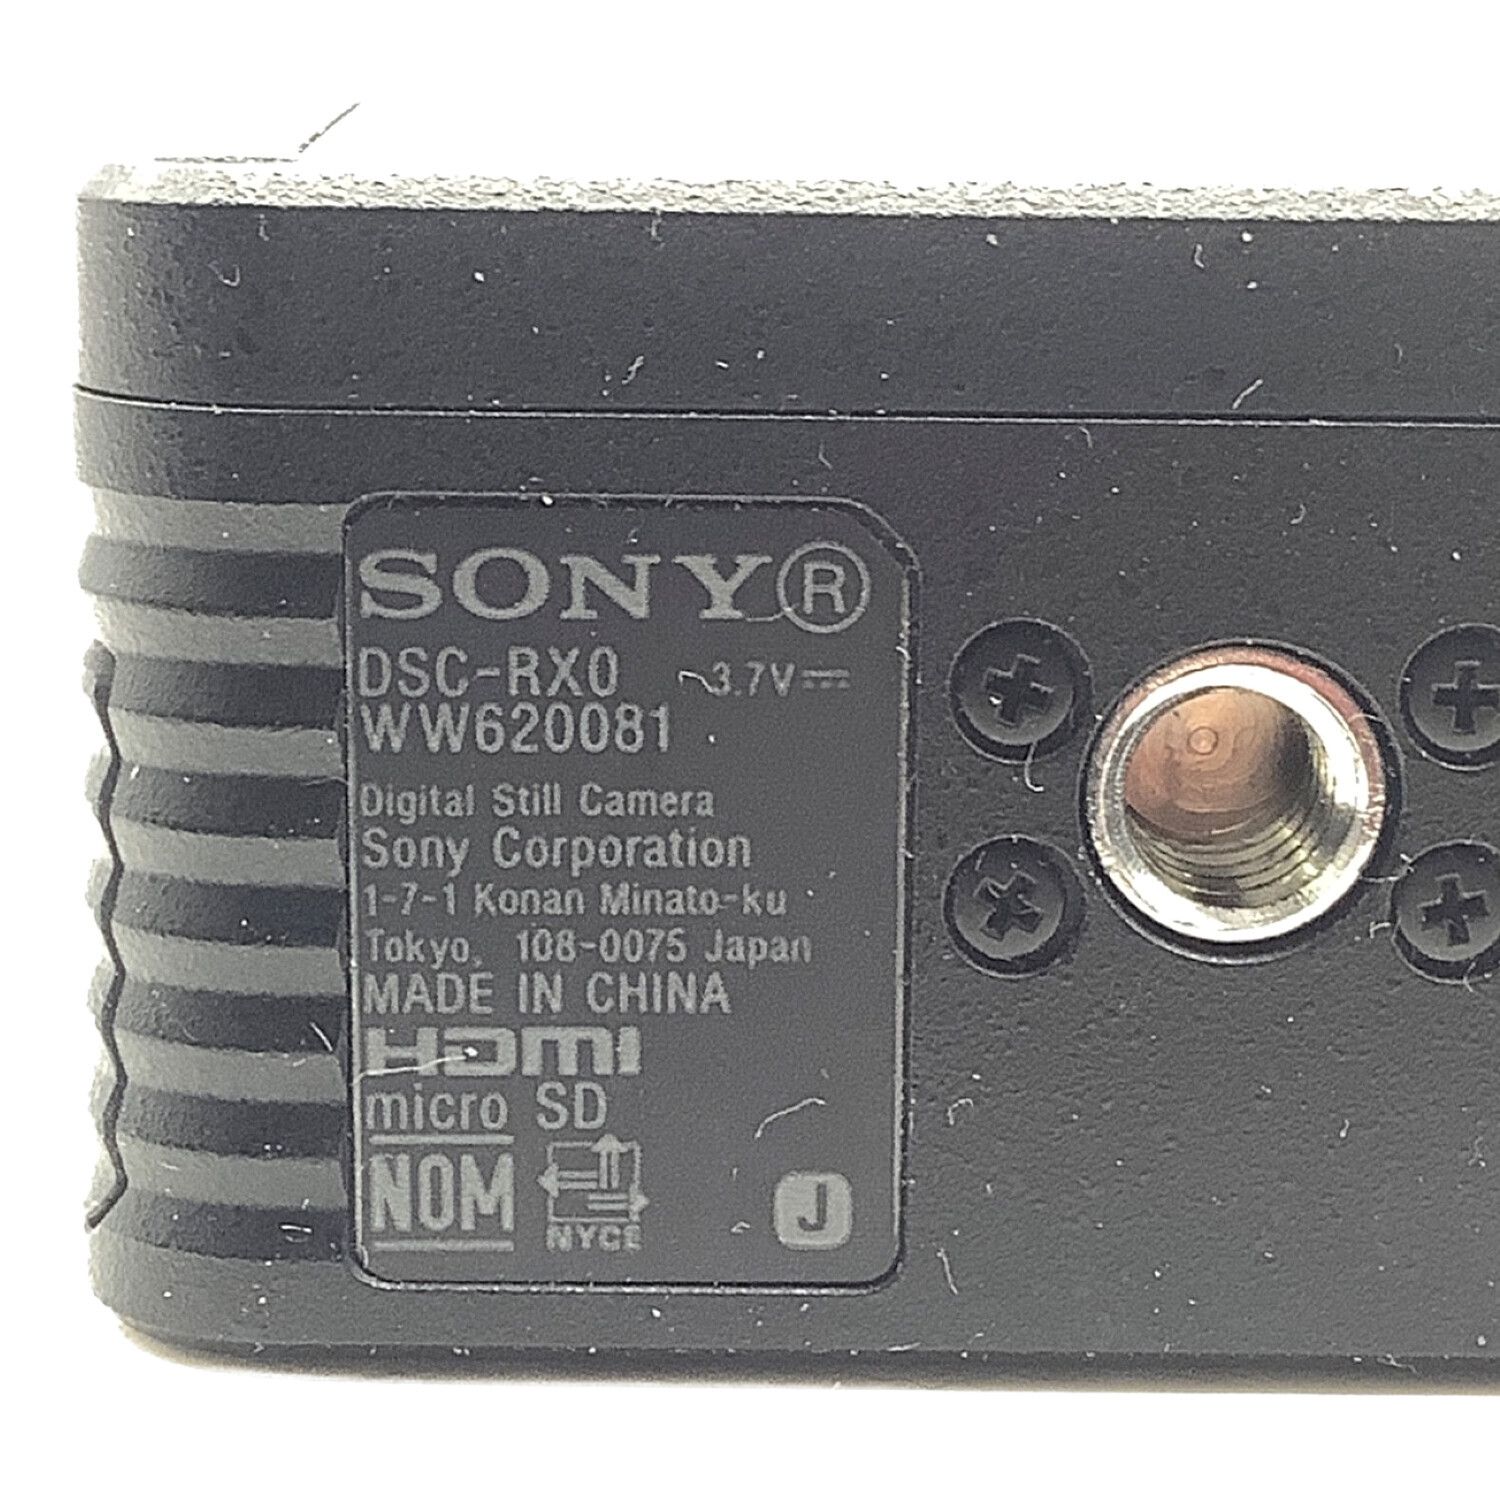 SONY (ソニー) デジタルスチルカメラ DSC-RX0 1530万画素(有効